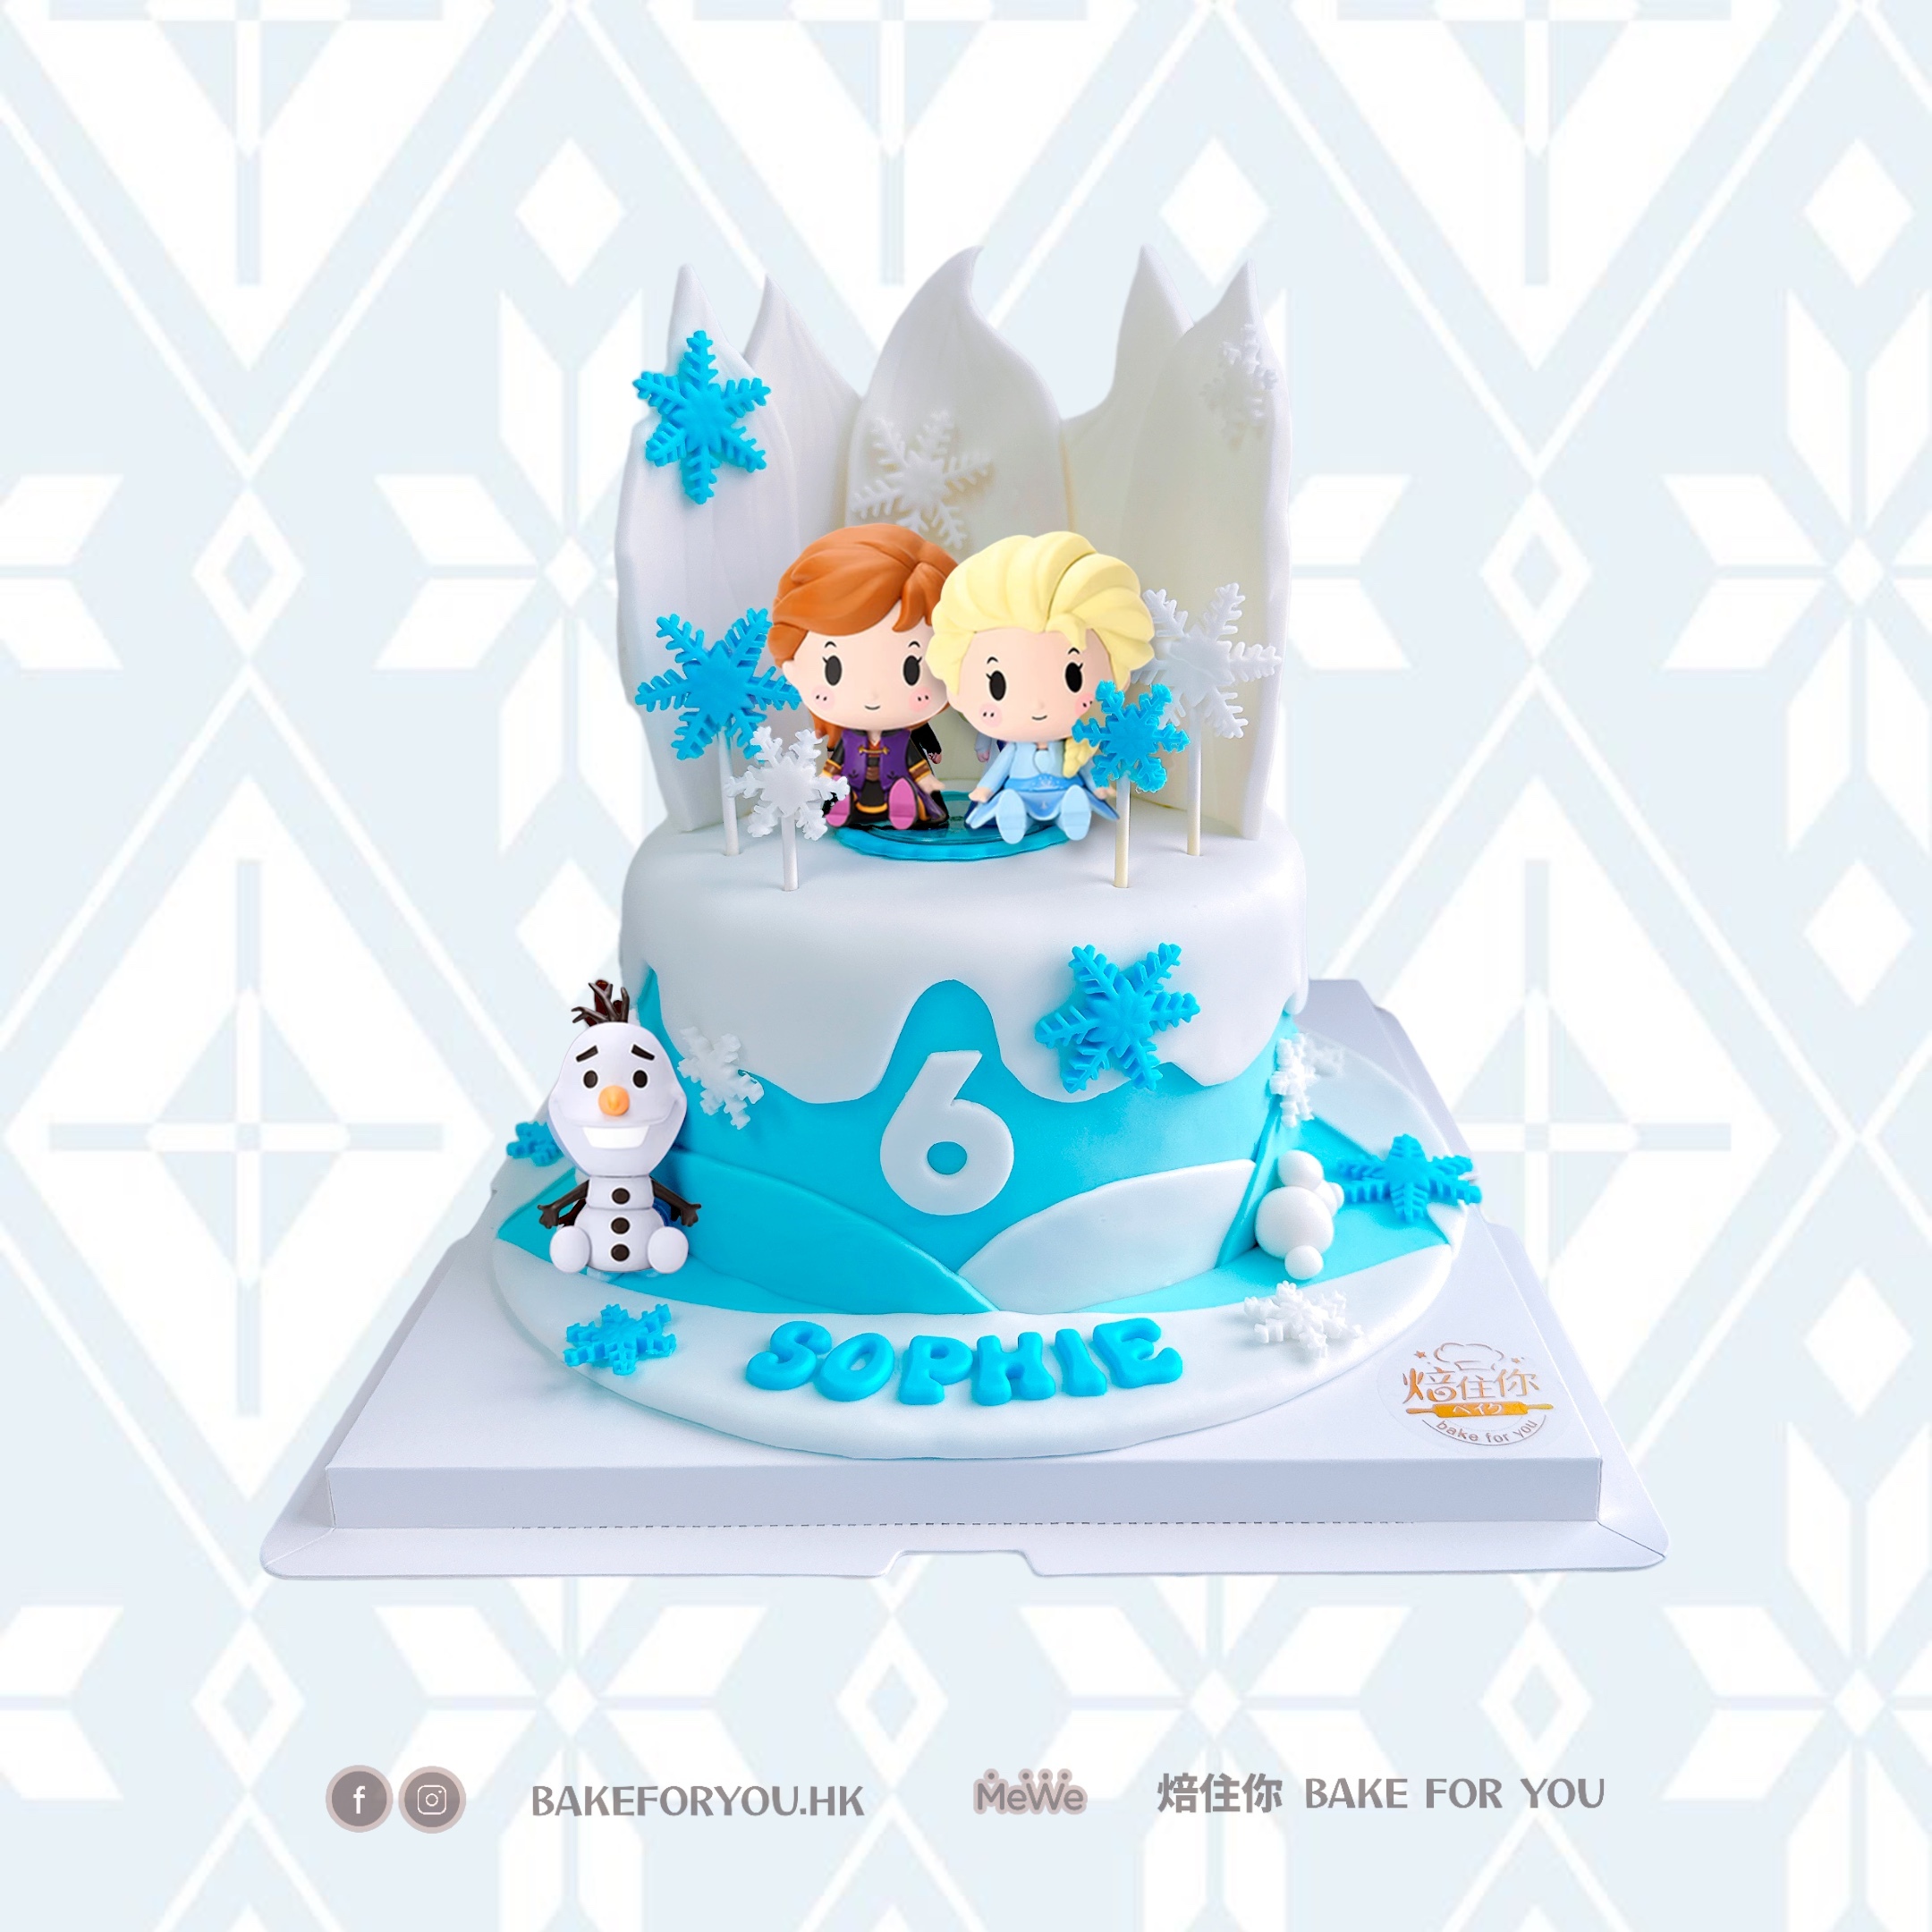 冰雪奇緣Elsa公主蛋糕DIY-妮可六歲生日蛋糕 @ 親親三寶與曼蒂媽咪 :: 痞客邦